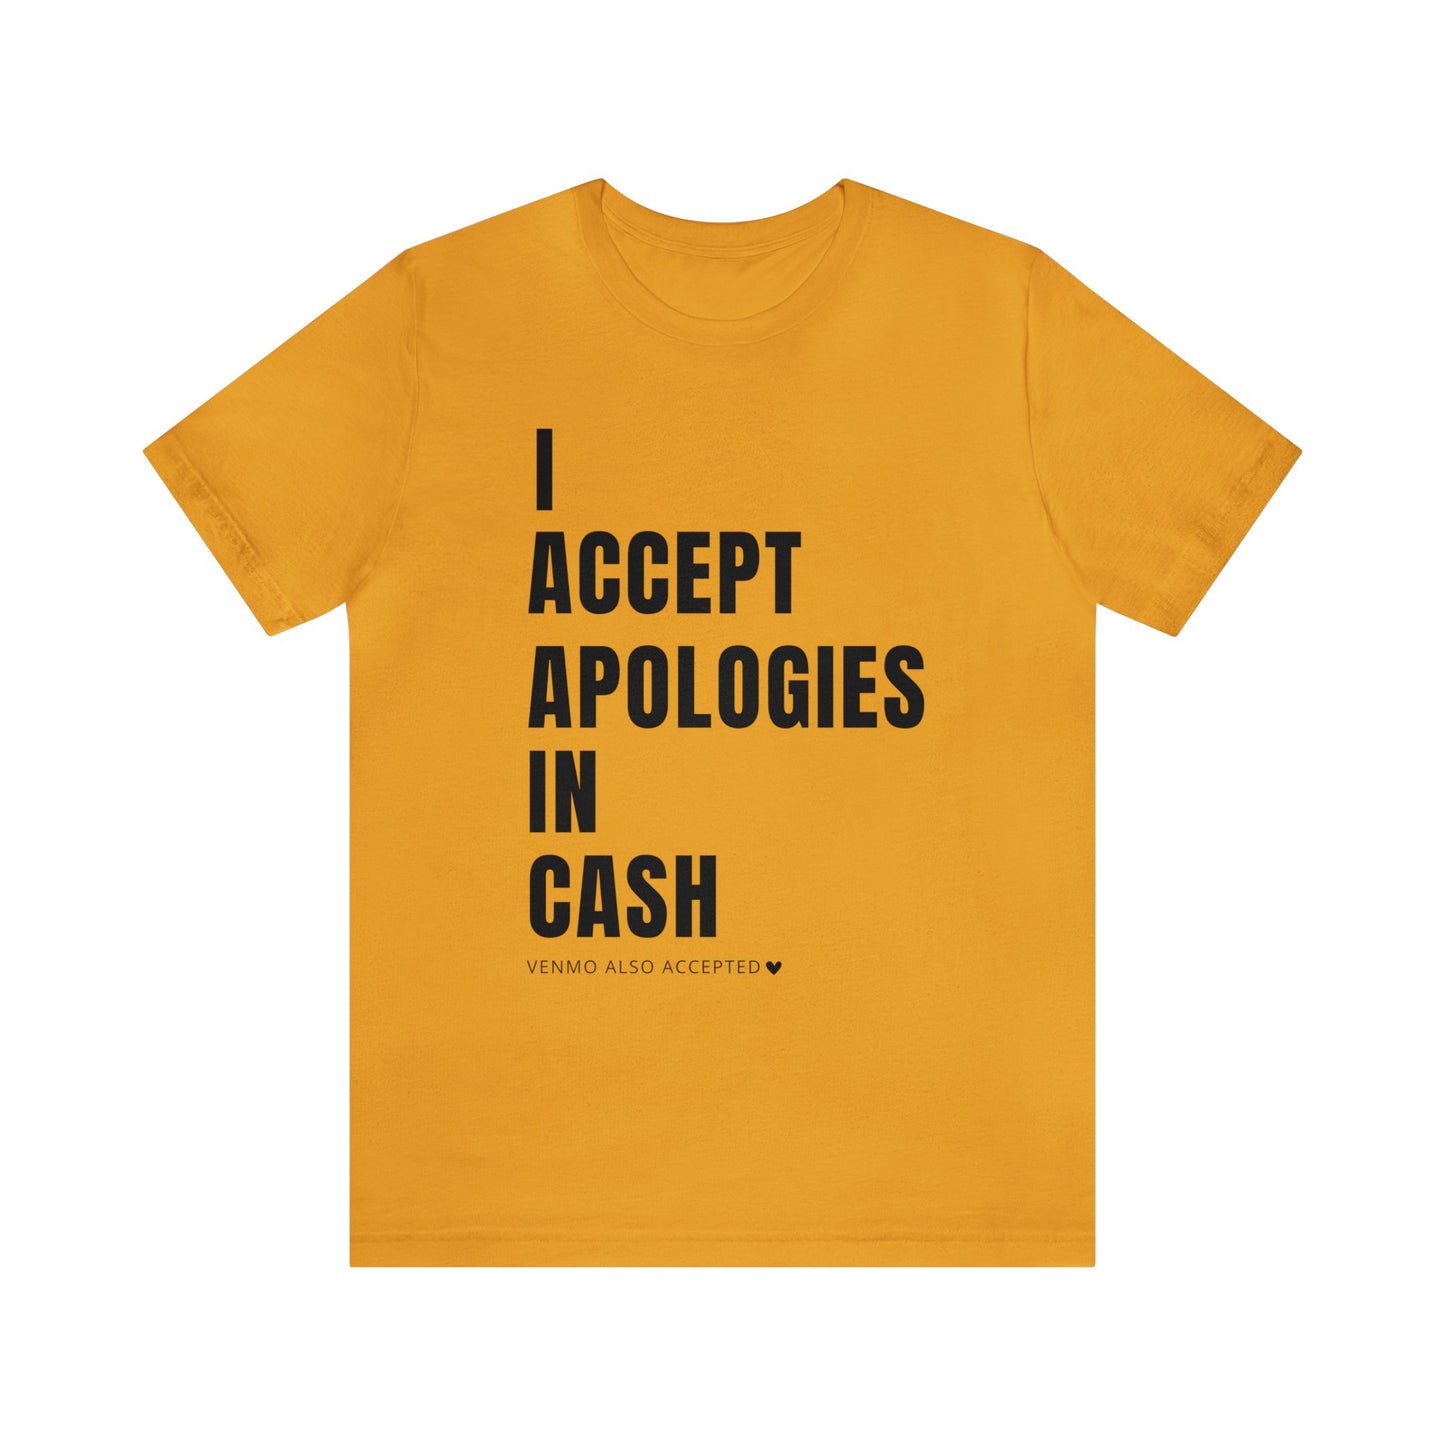 Cash Apologies Tshirt